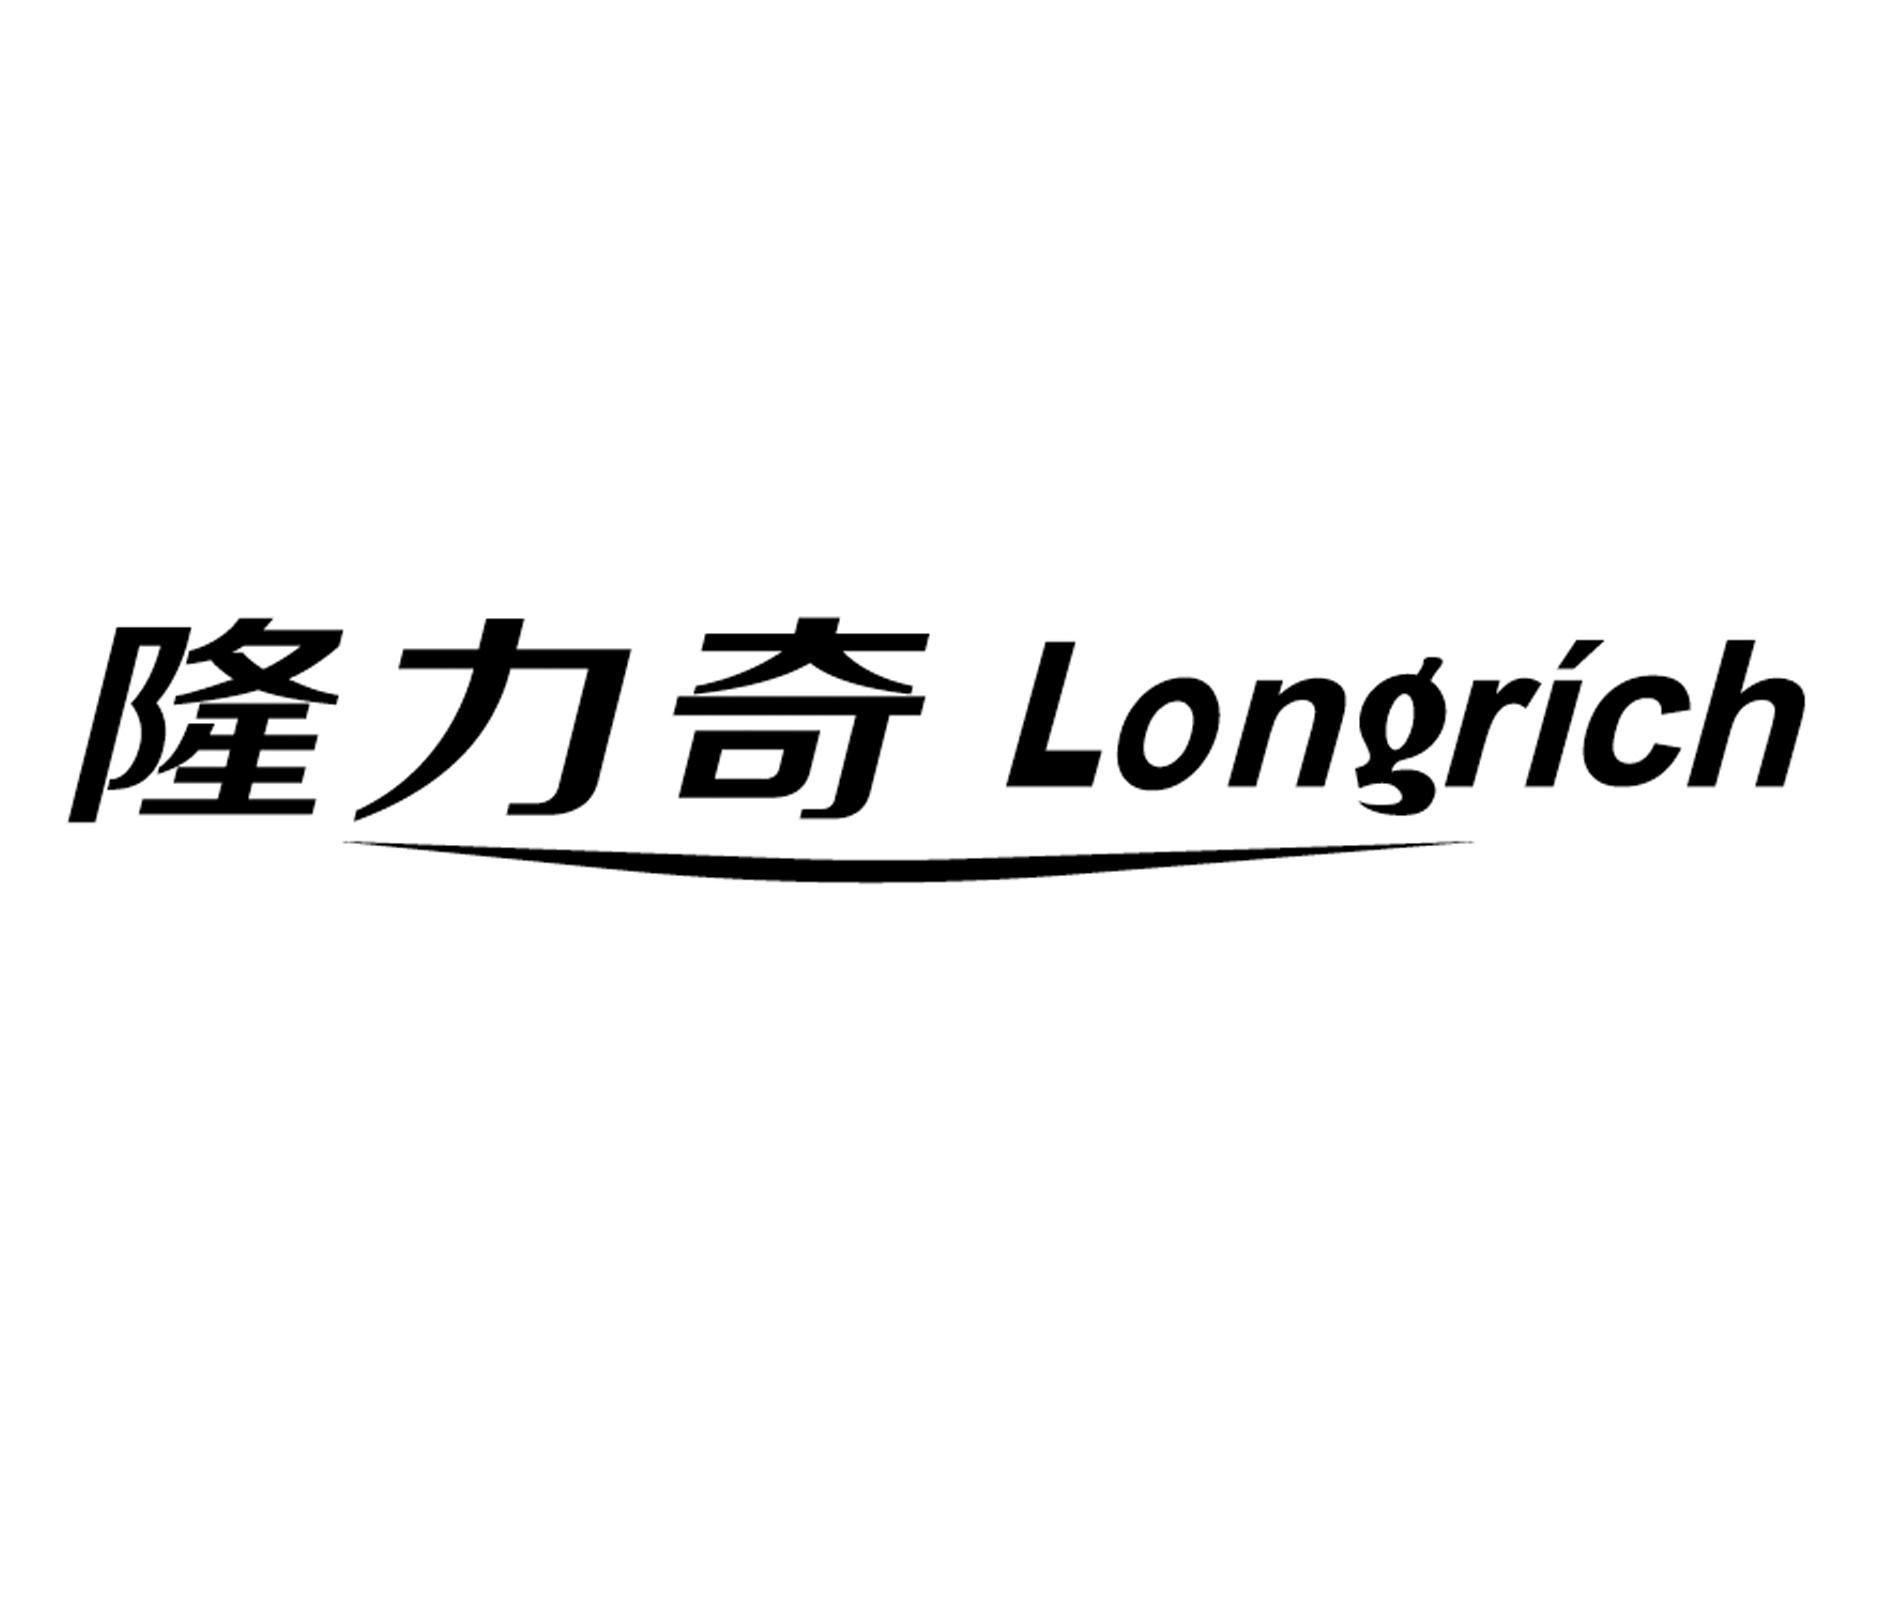 隆力奇 longrich 商标公告